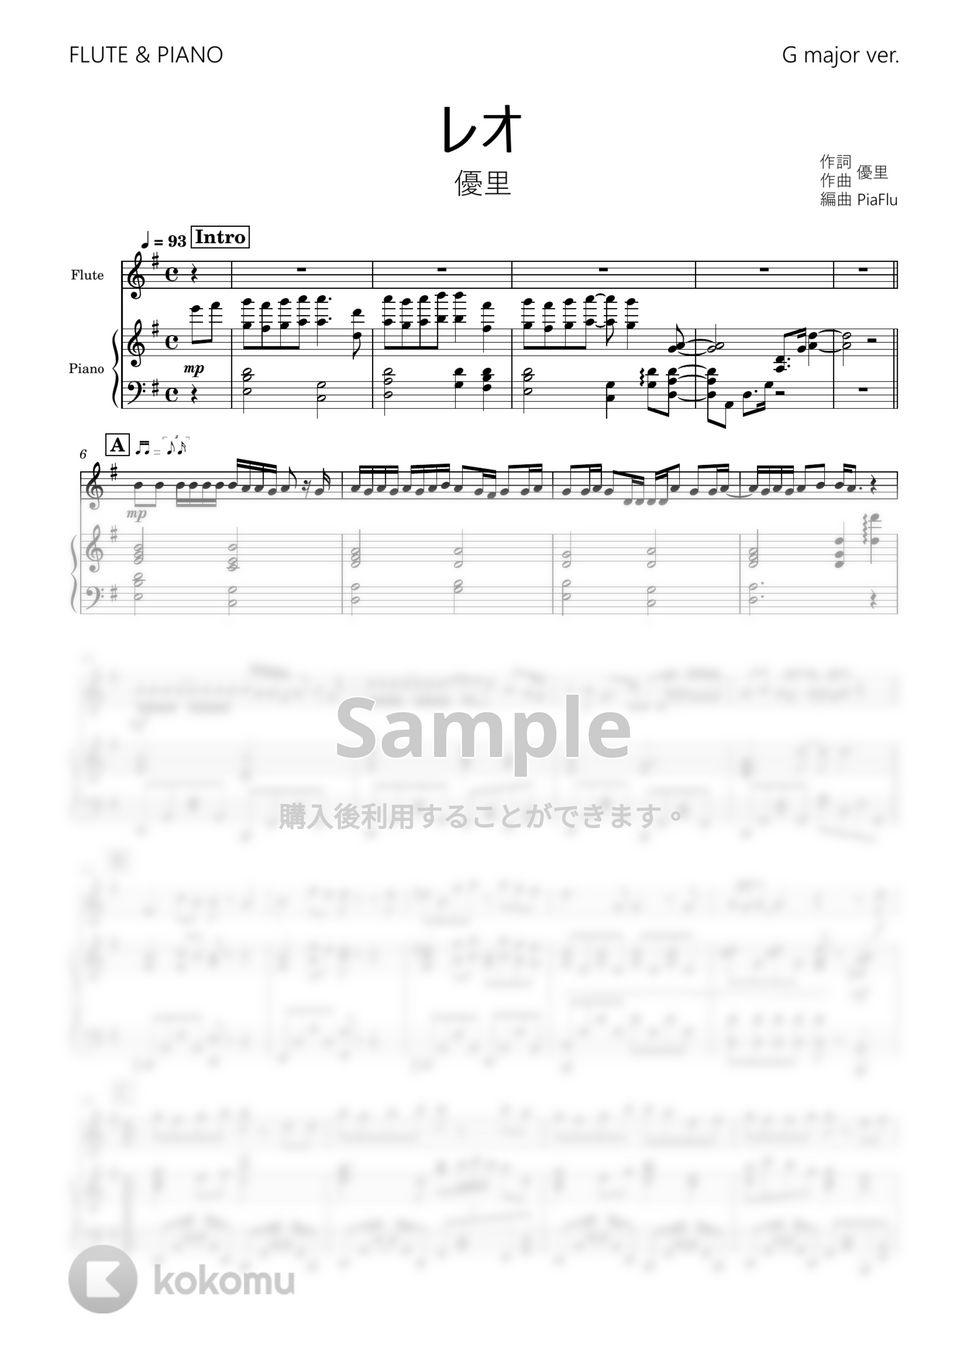 優里 - レオ (フルート&ピアノ伴奏 / Gメジャーver.) by PiaFlu